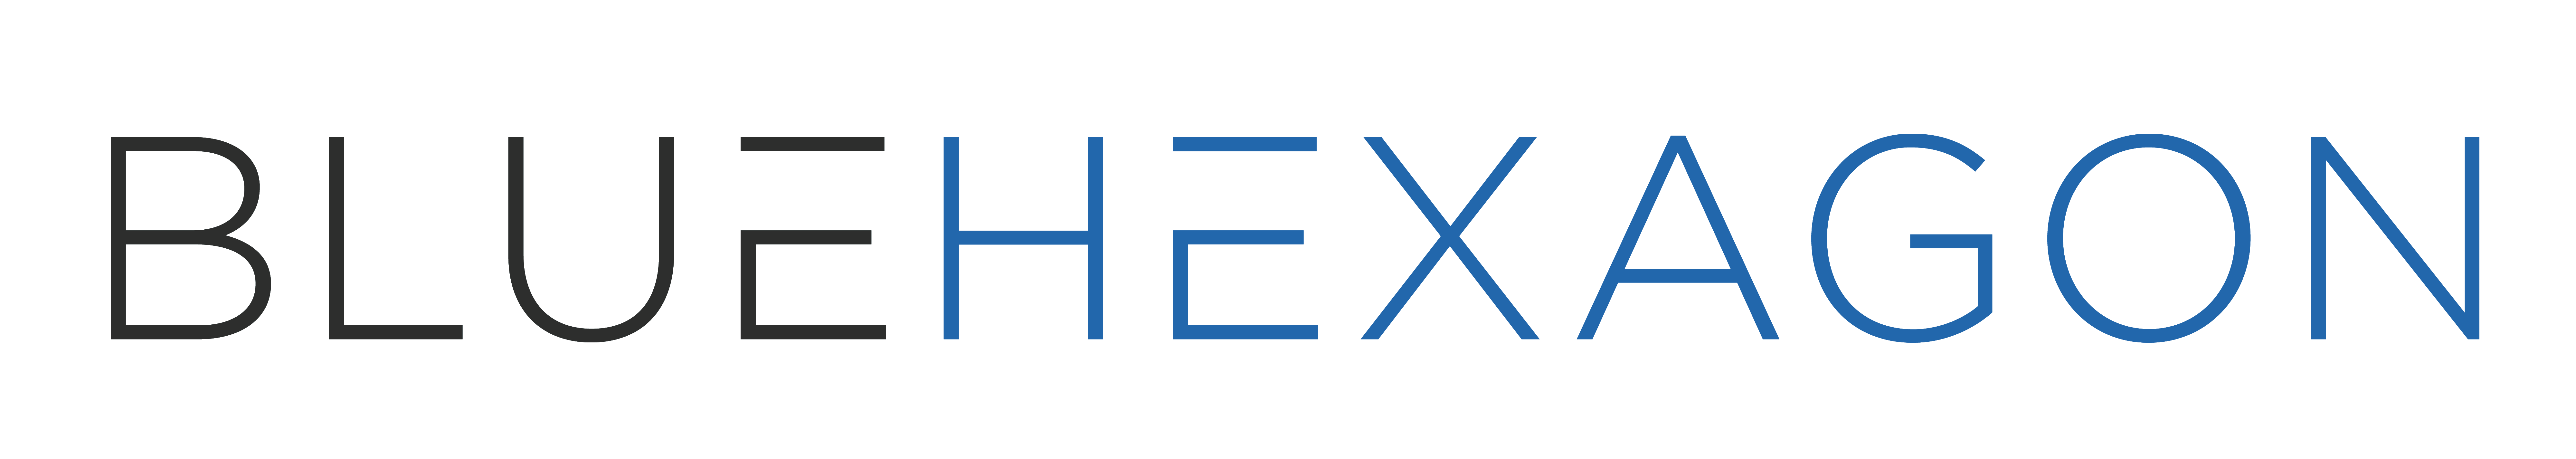 Blue Hexagon Logo - Home